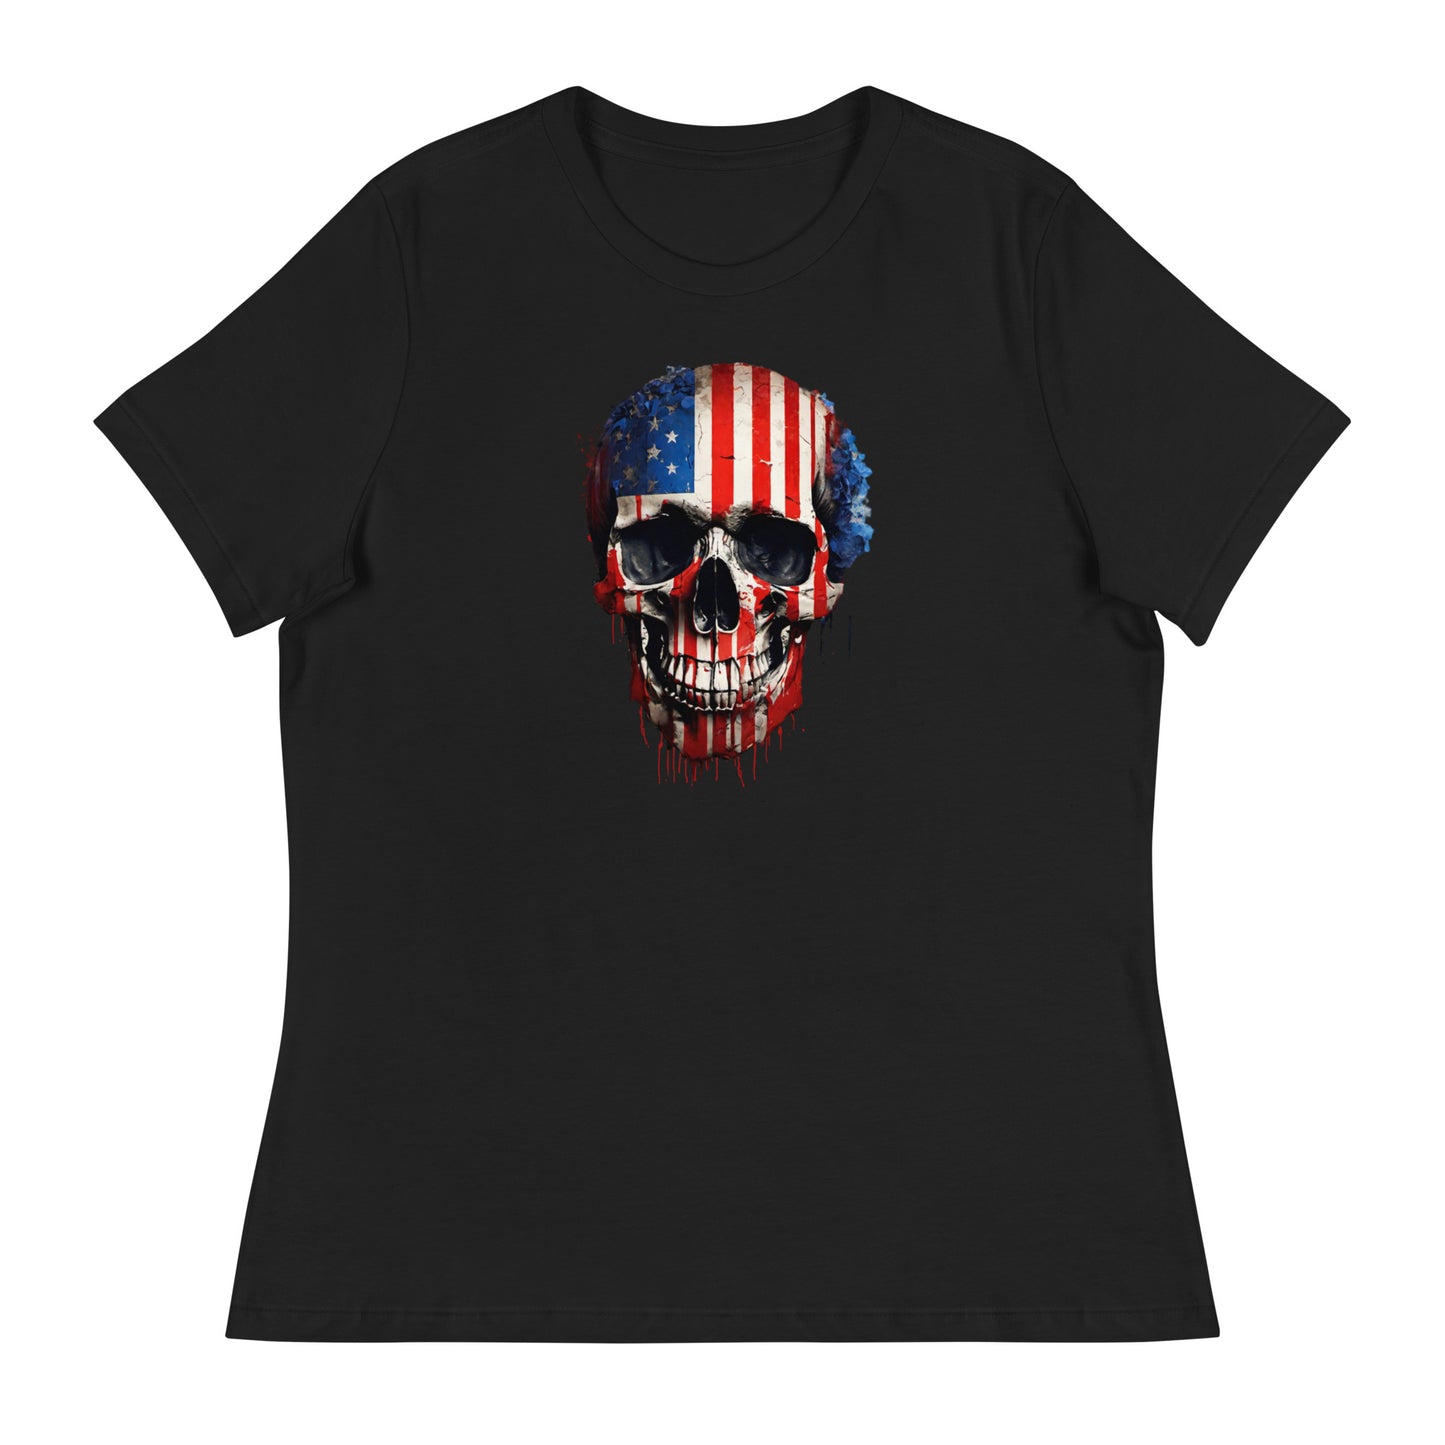 Red, White, & Blue Skull Women's T-Shirt Black